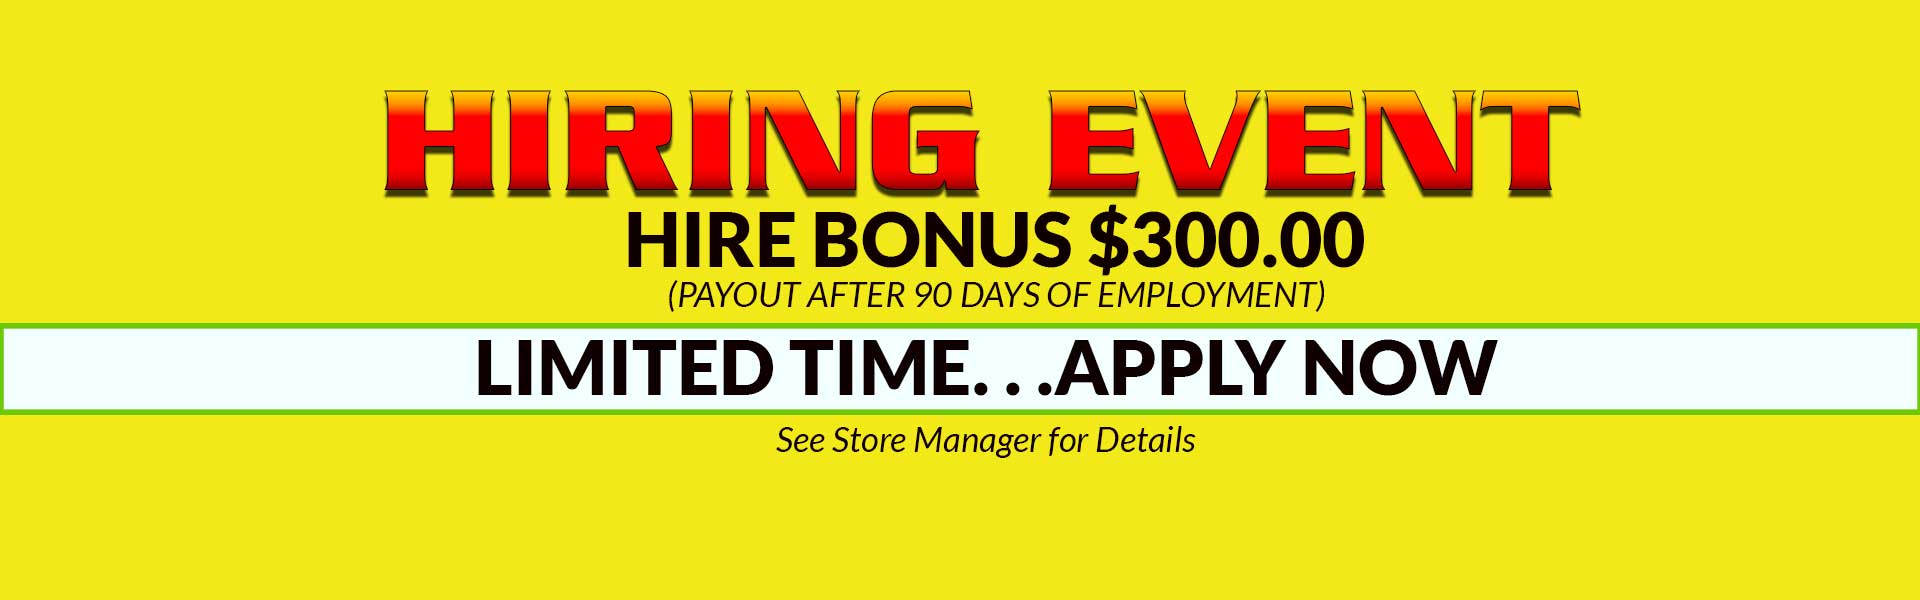 employment-hiring-event